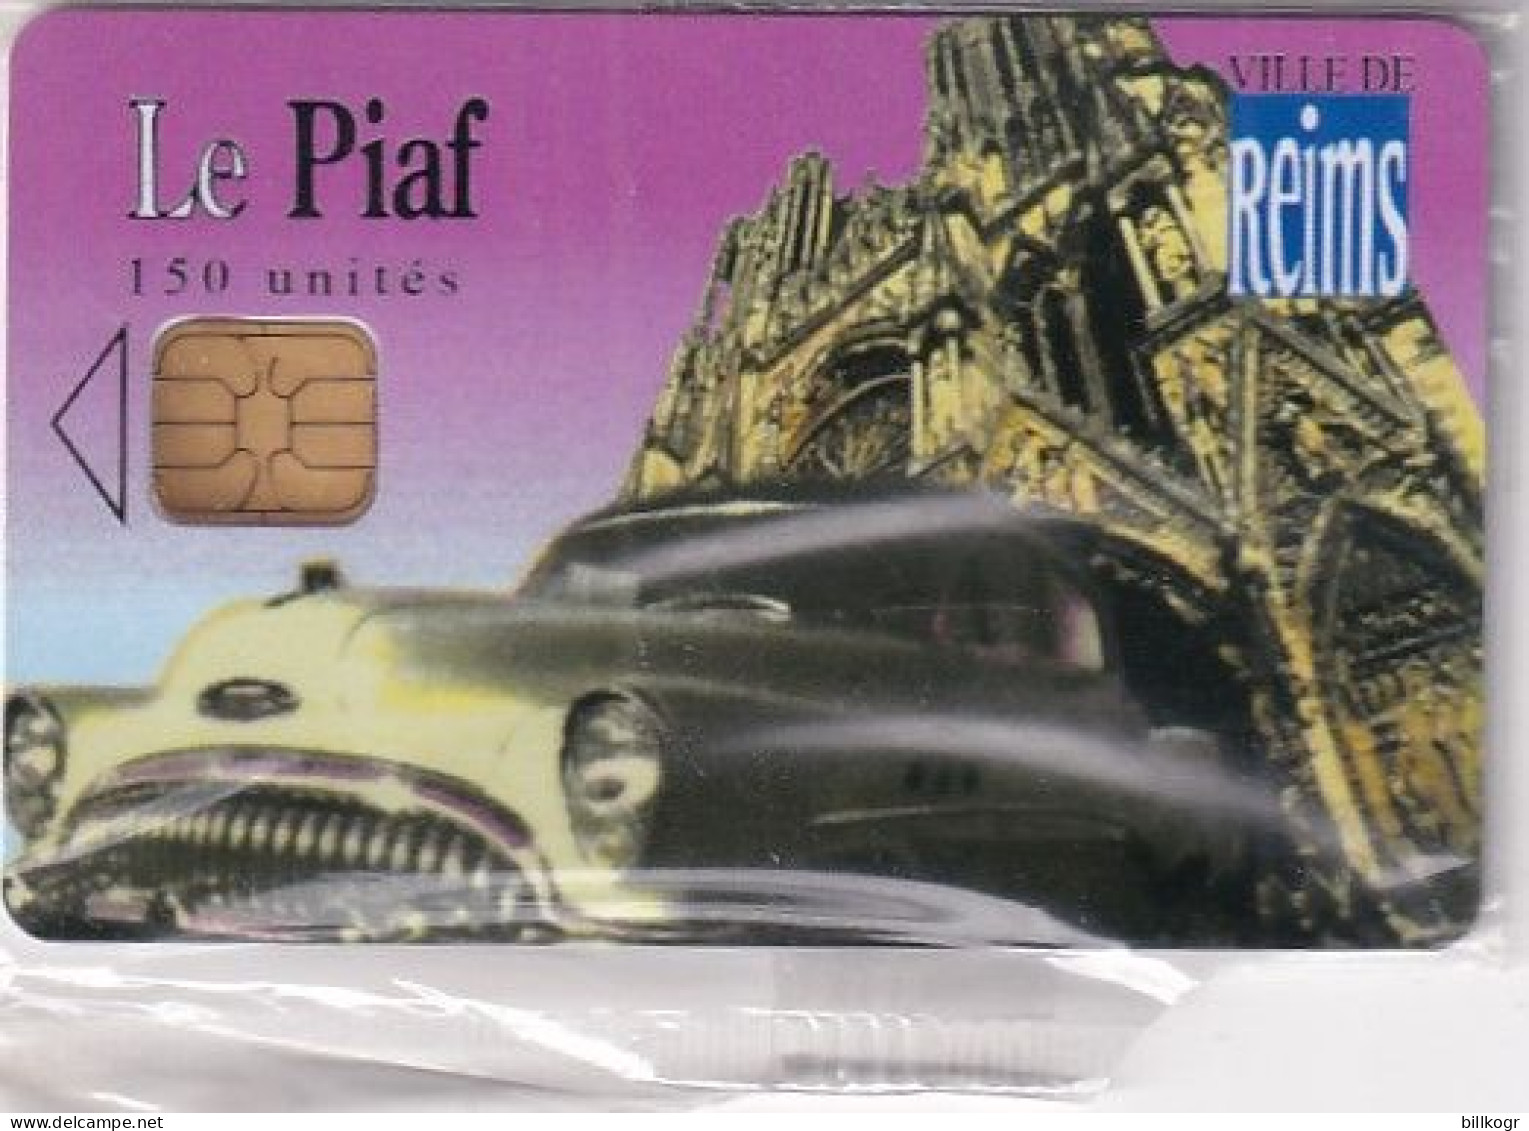 FRANCE - Le Piaf/Ville De Reims 150 Unites, Tirage 2900, 07/06, Mint - PIAF Parking Cards